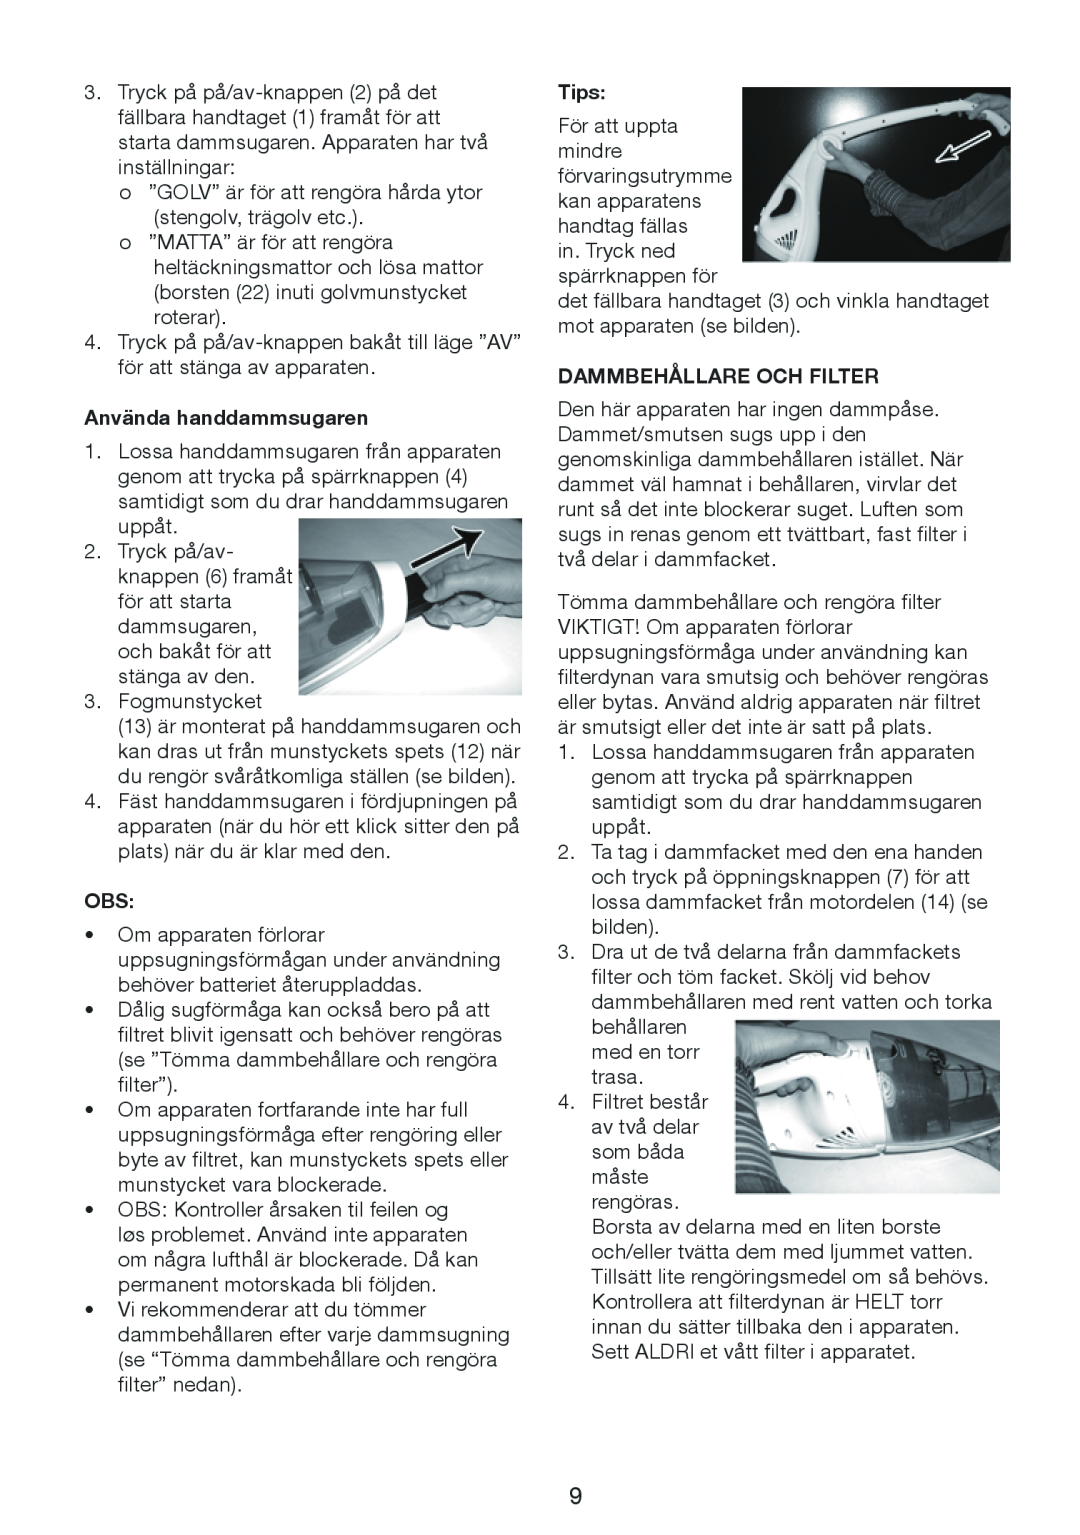 Melissa 640-132 manual Använda handdammsugaren, Tips, Dammbehållare Och Filter 